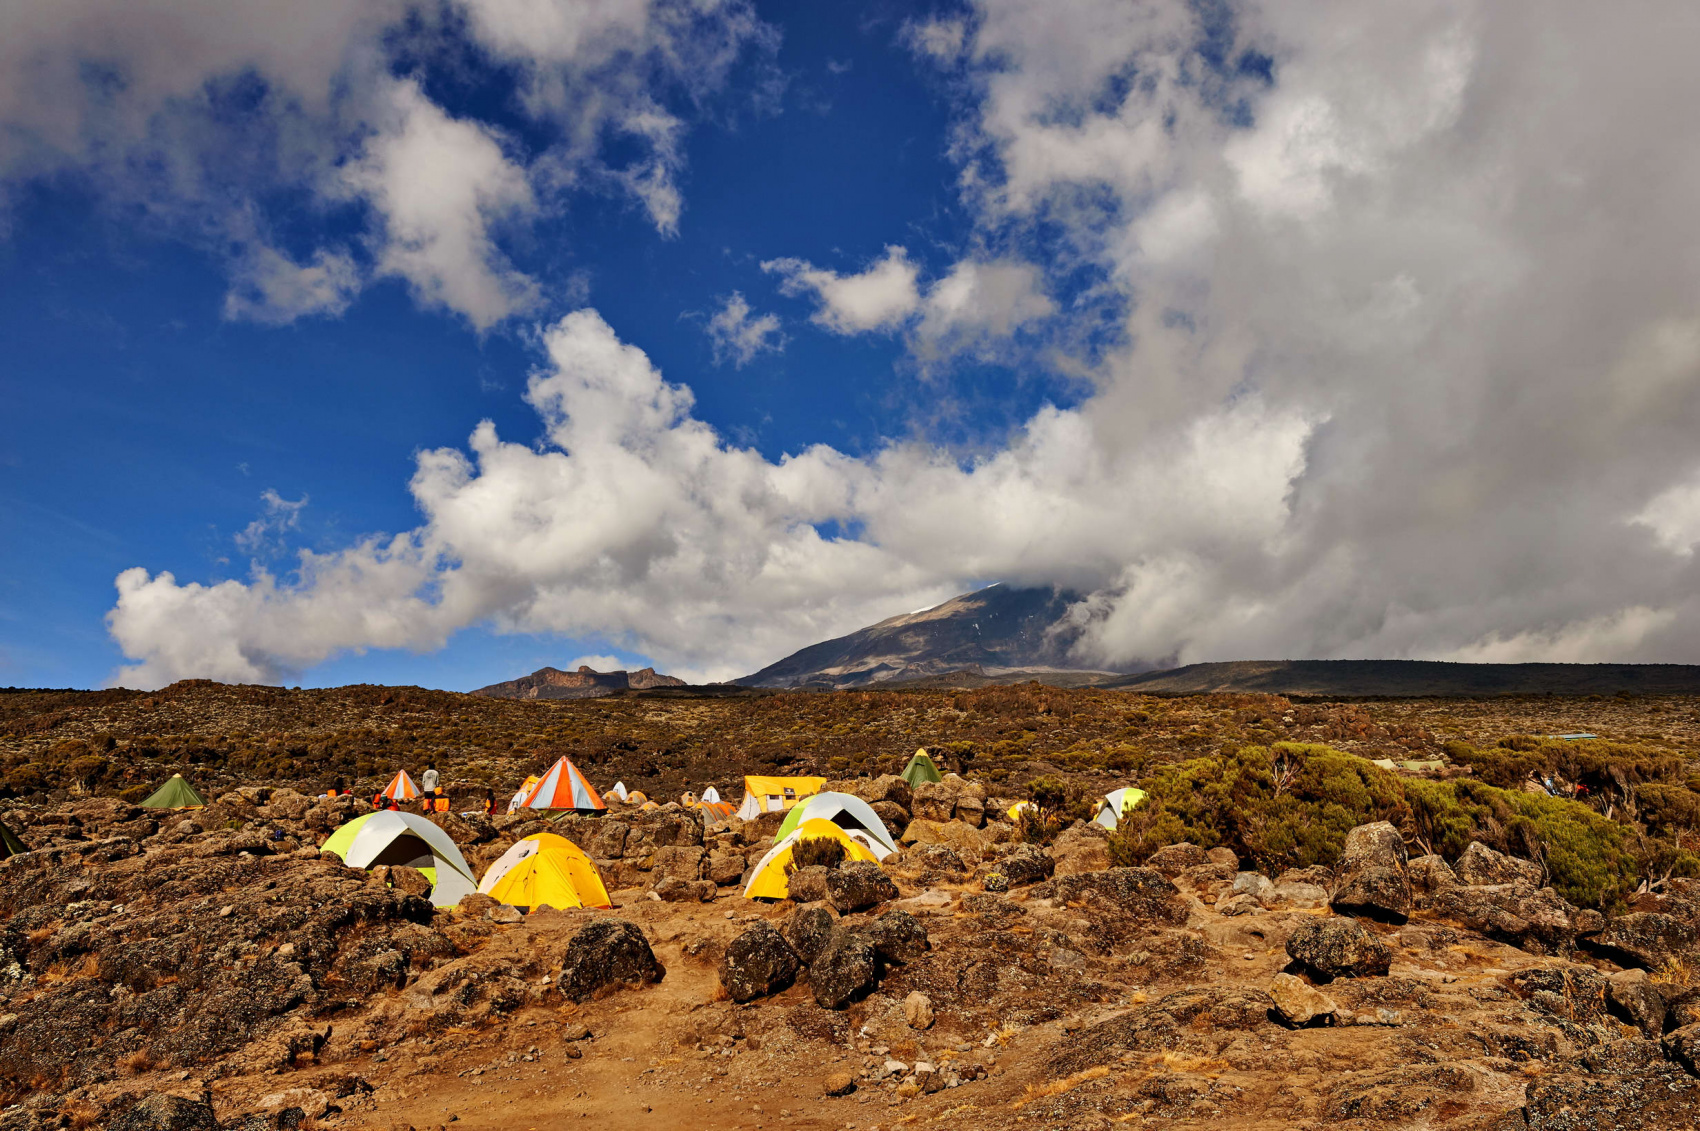 Route camping. Килиманджаро Танзания восхождение. Килиманджаро подъем на гору. Кемпинг Кения Килиманджаро. Килиманджаро 2 лагерь.